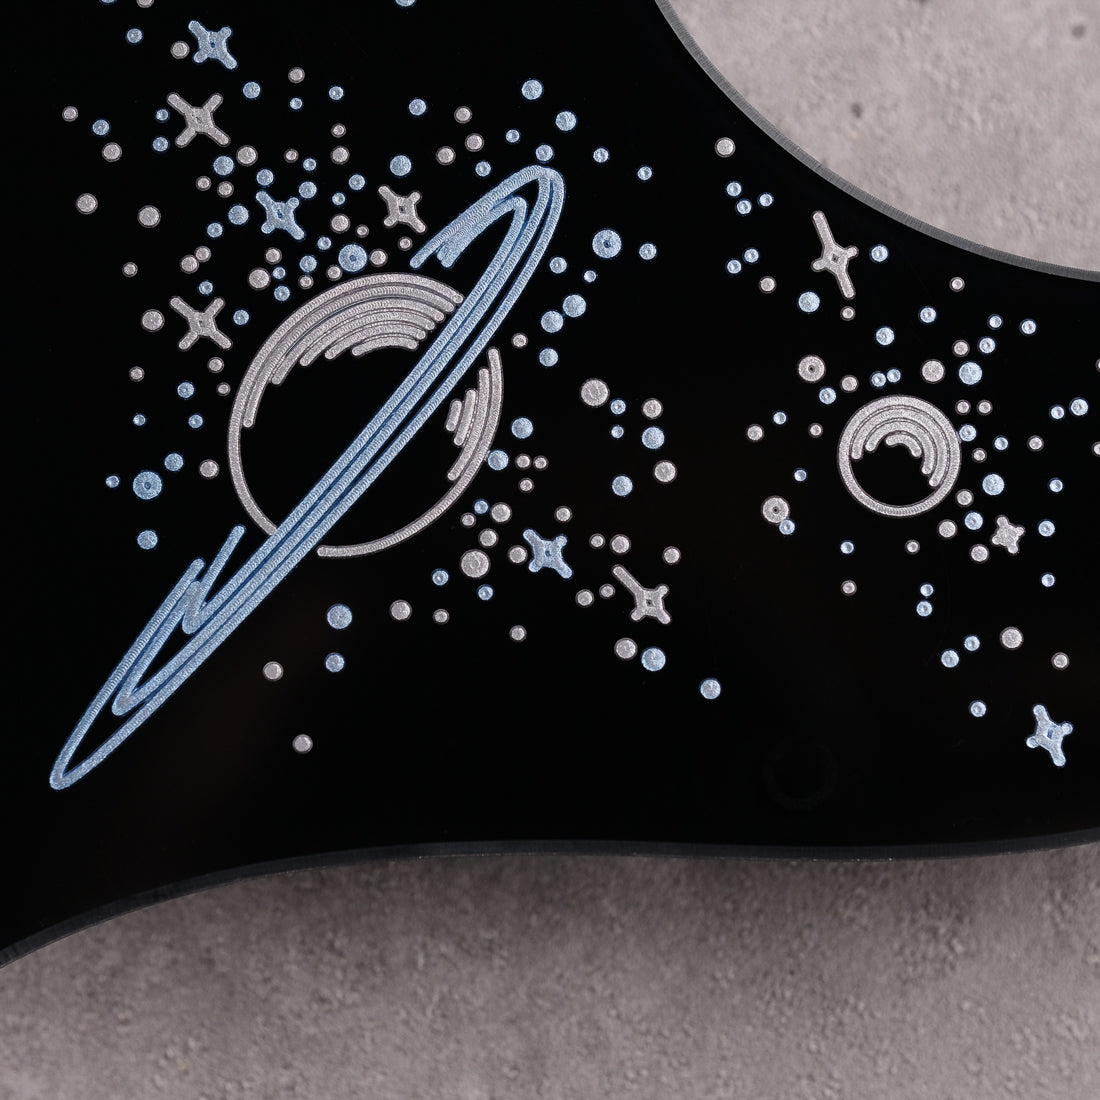 Space Oddity - Stratocaster Pickguard - in Black